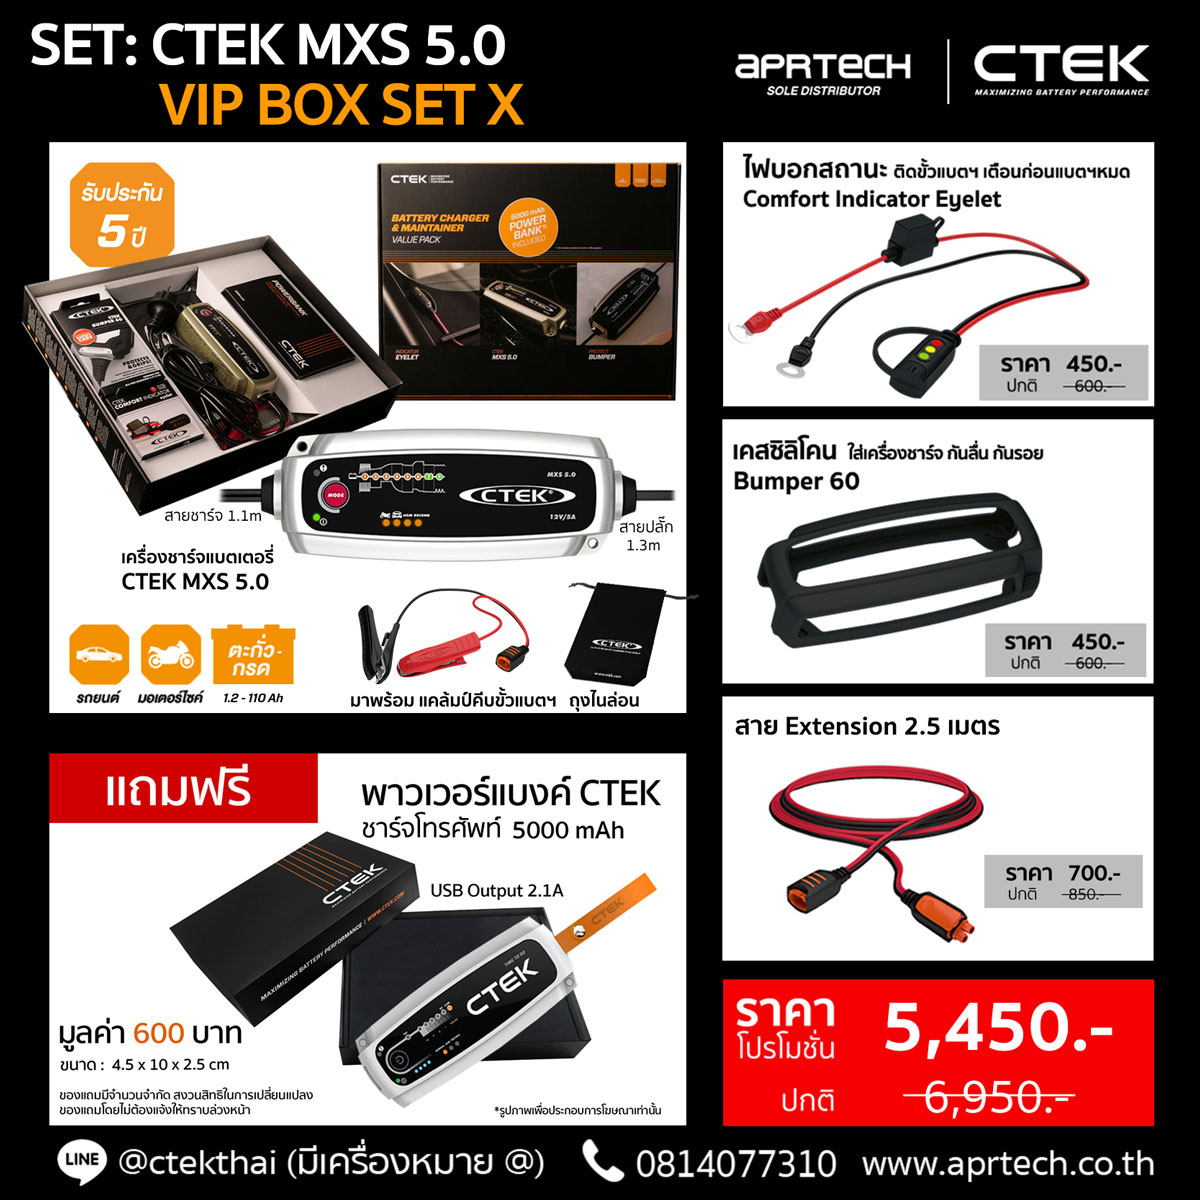 SET CTEK MXS 5.0 VIP BOX SET X (CTEK MXS 5.0 + Indicator Eyelet + Bumper + Extension 2.5)